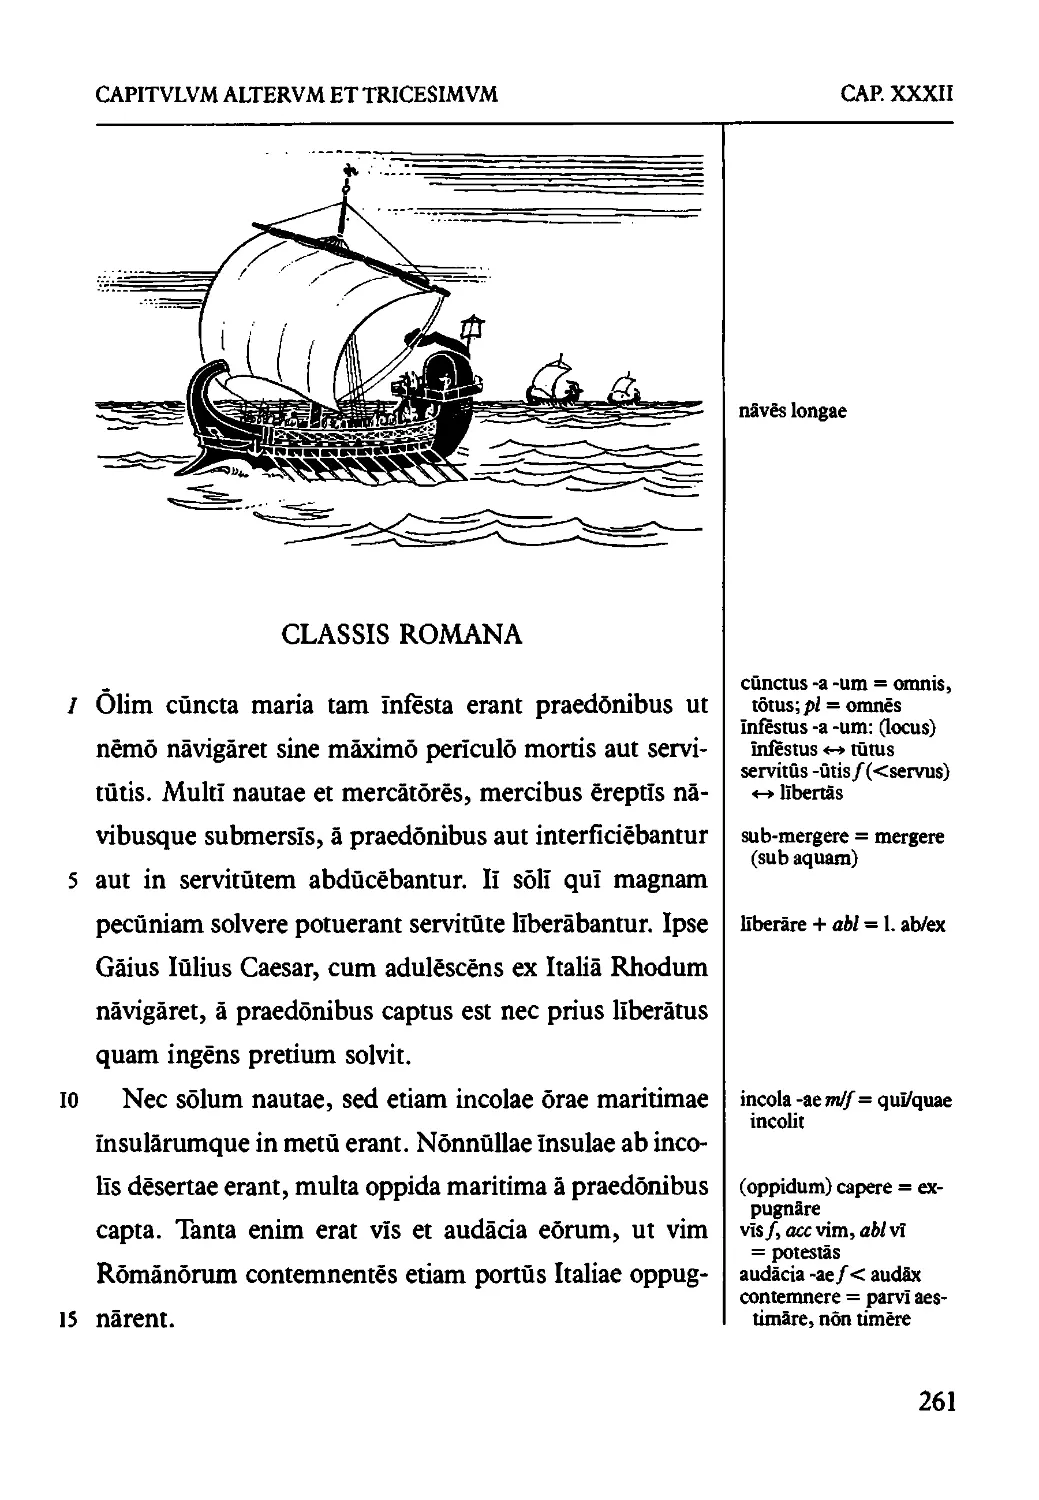 Cap. XXXII. CLASSIS ROMANA